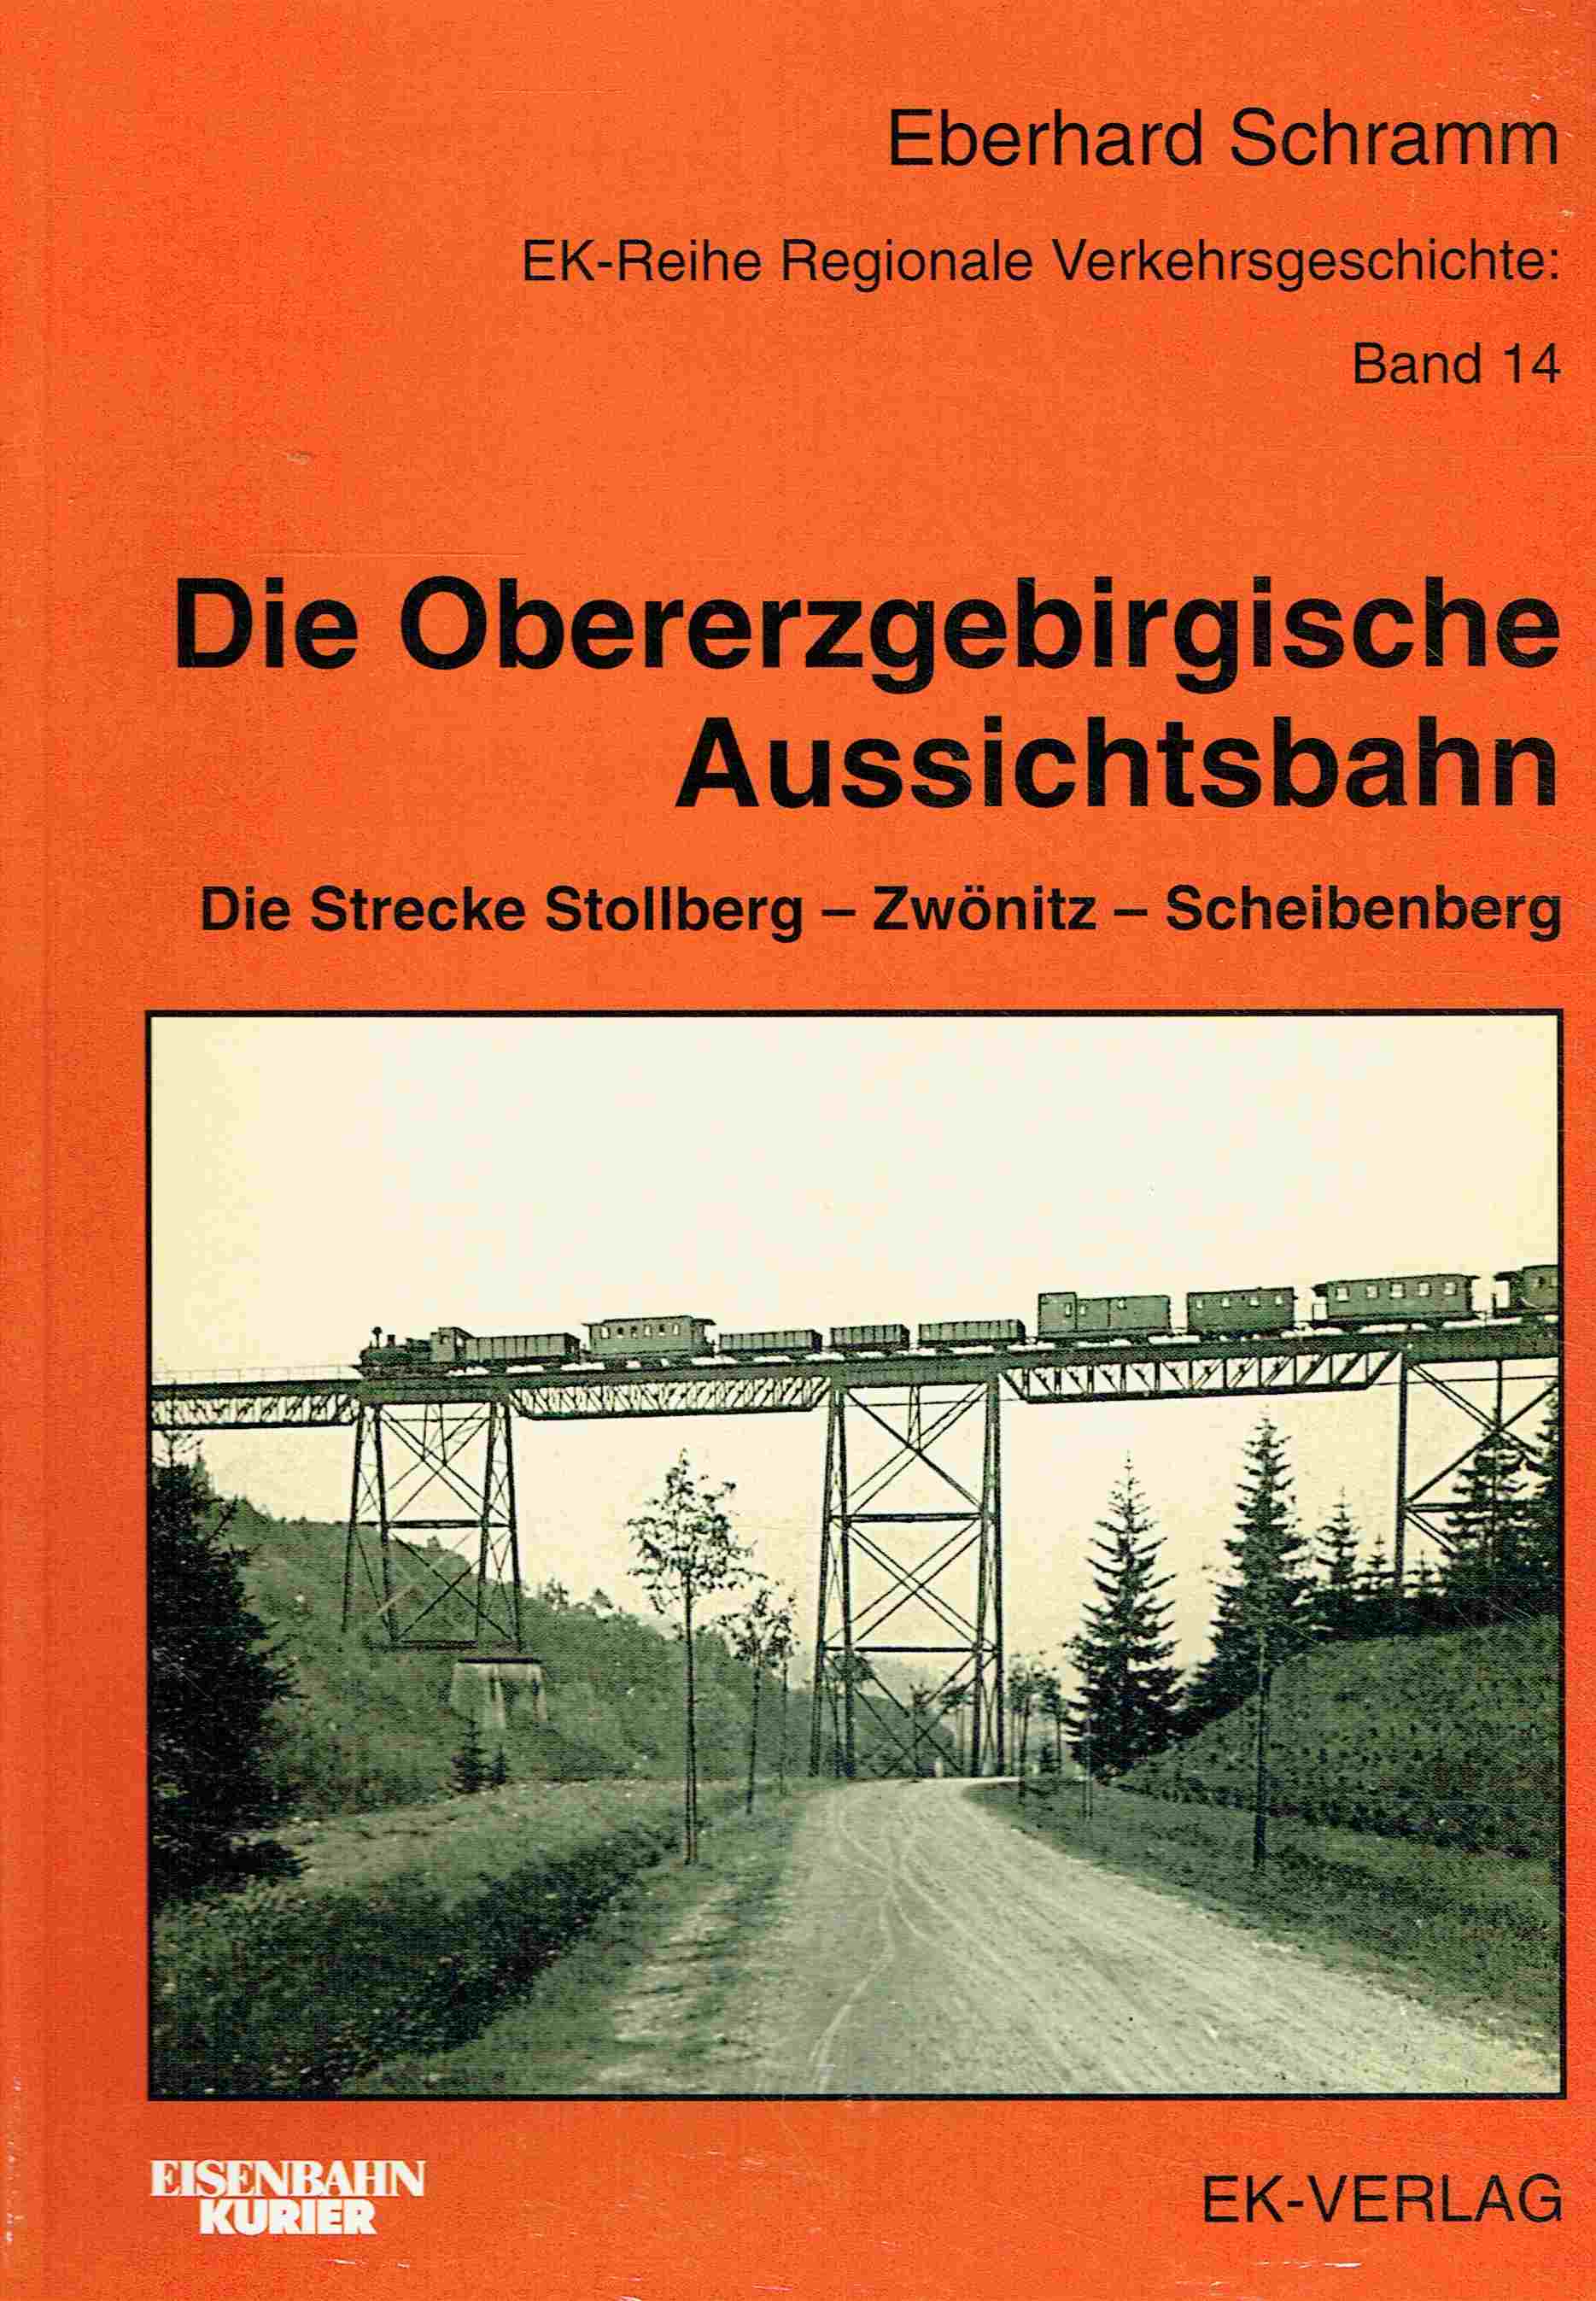 Die obererzgebirgische Aussichtsbahn: Die Strecke Stollberg - Zwönitz - Scheibenberg. EK-Reihe Regionale Verkehrsgeschichte: Band 14 - Schramm, Eberhard